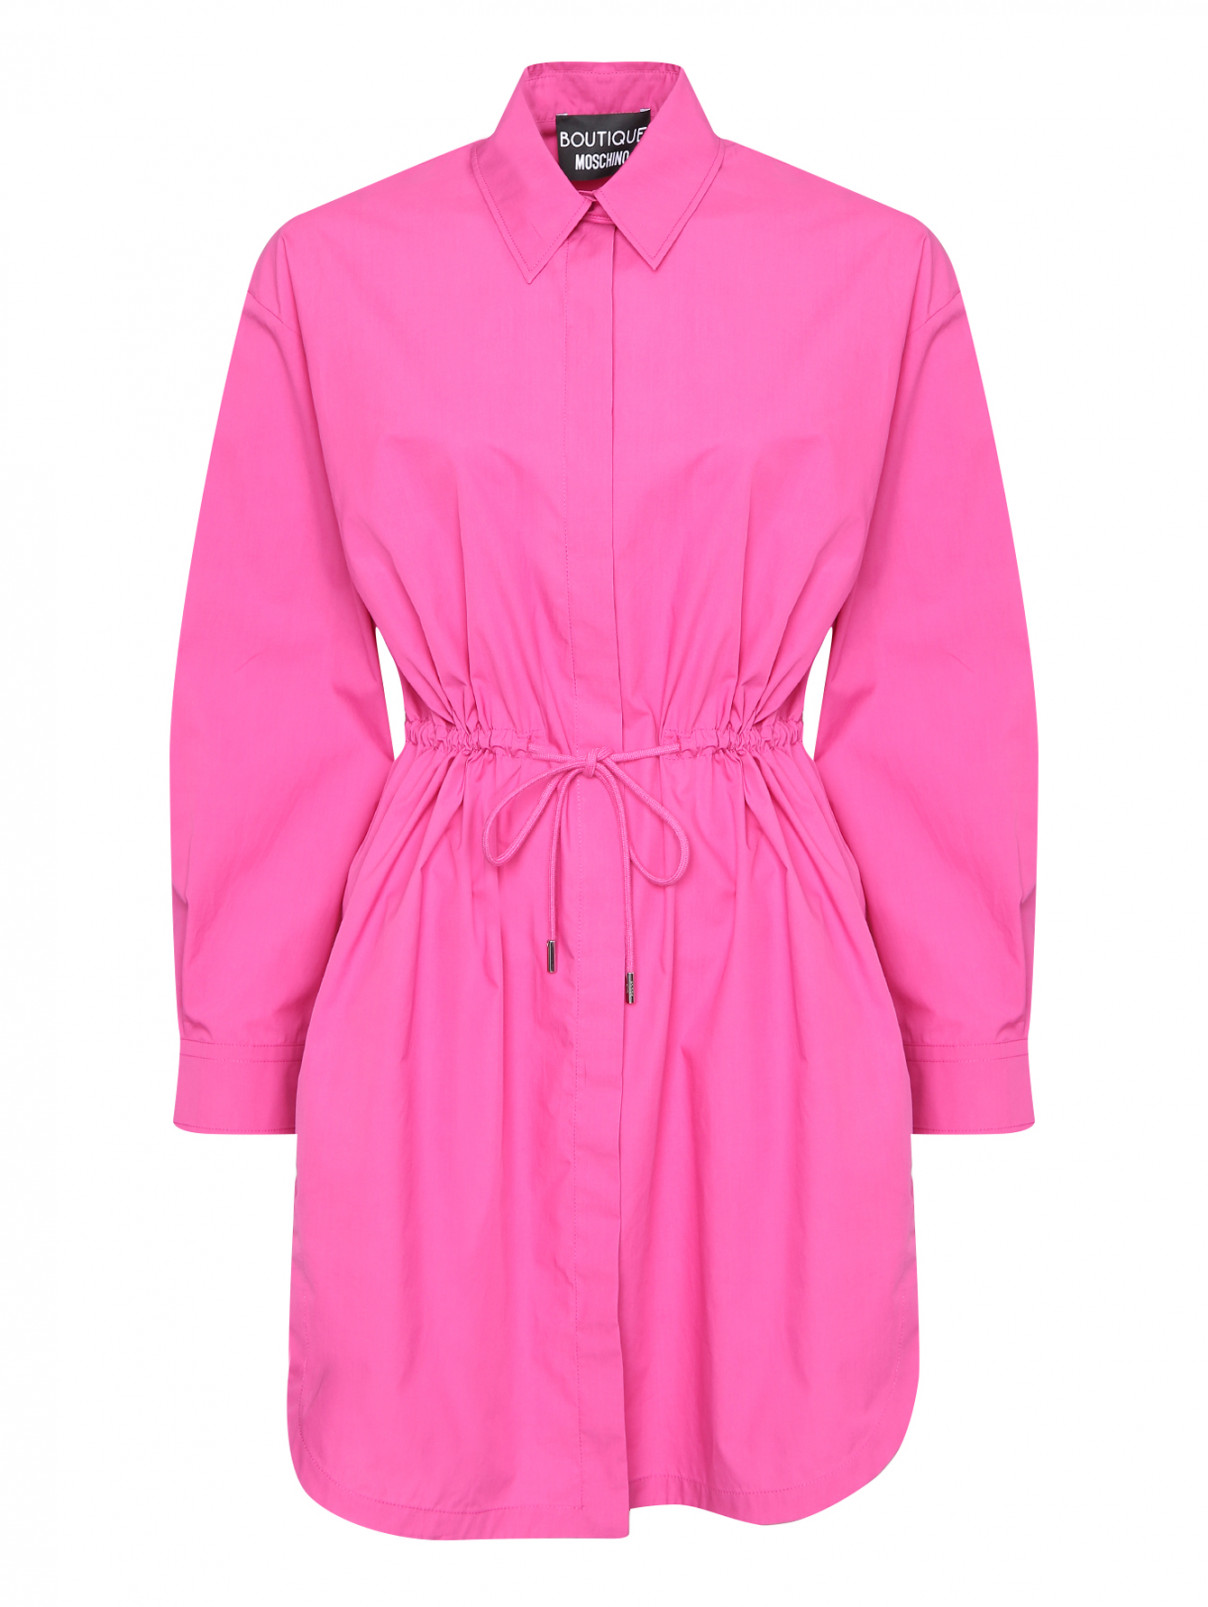 Удлиненная блуза из хлопка Moschino Boutique  –  Общий вид  – Цвет:  Фиолетовый